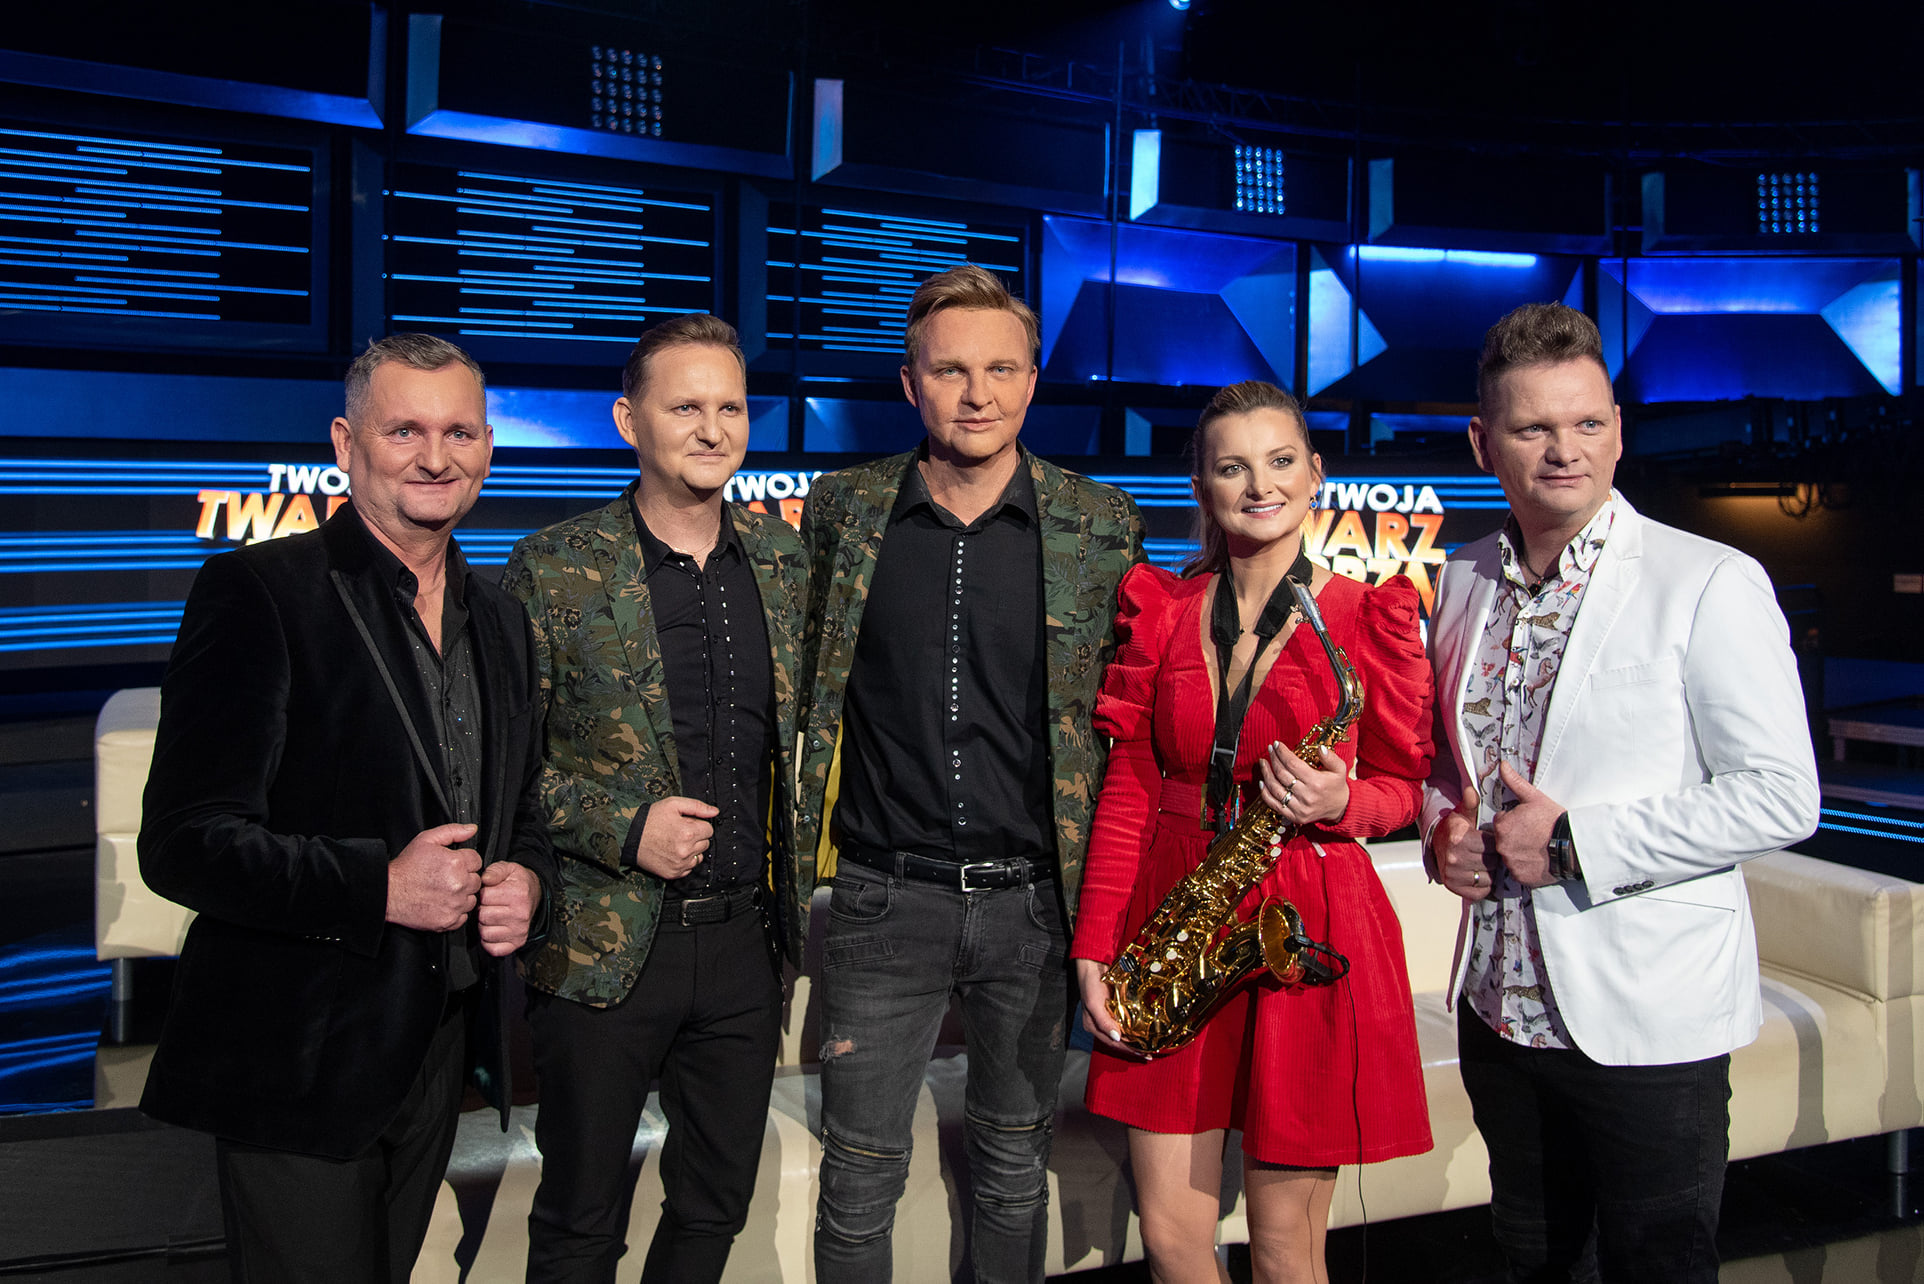 Uwielbiana grupa Mig na scenie w telewizji Polsat! Trudno było odróżnić aktora od oryginalnego wokalisty - Marka Gwiazdowskiego